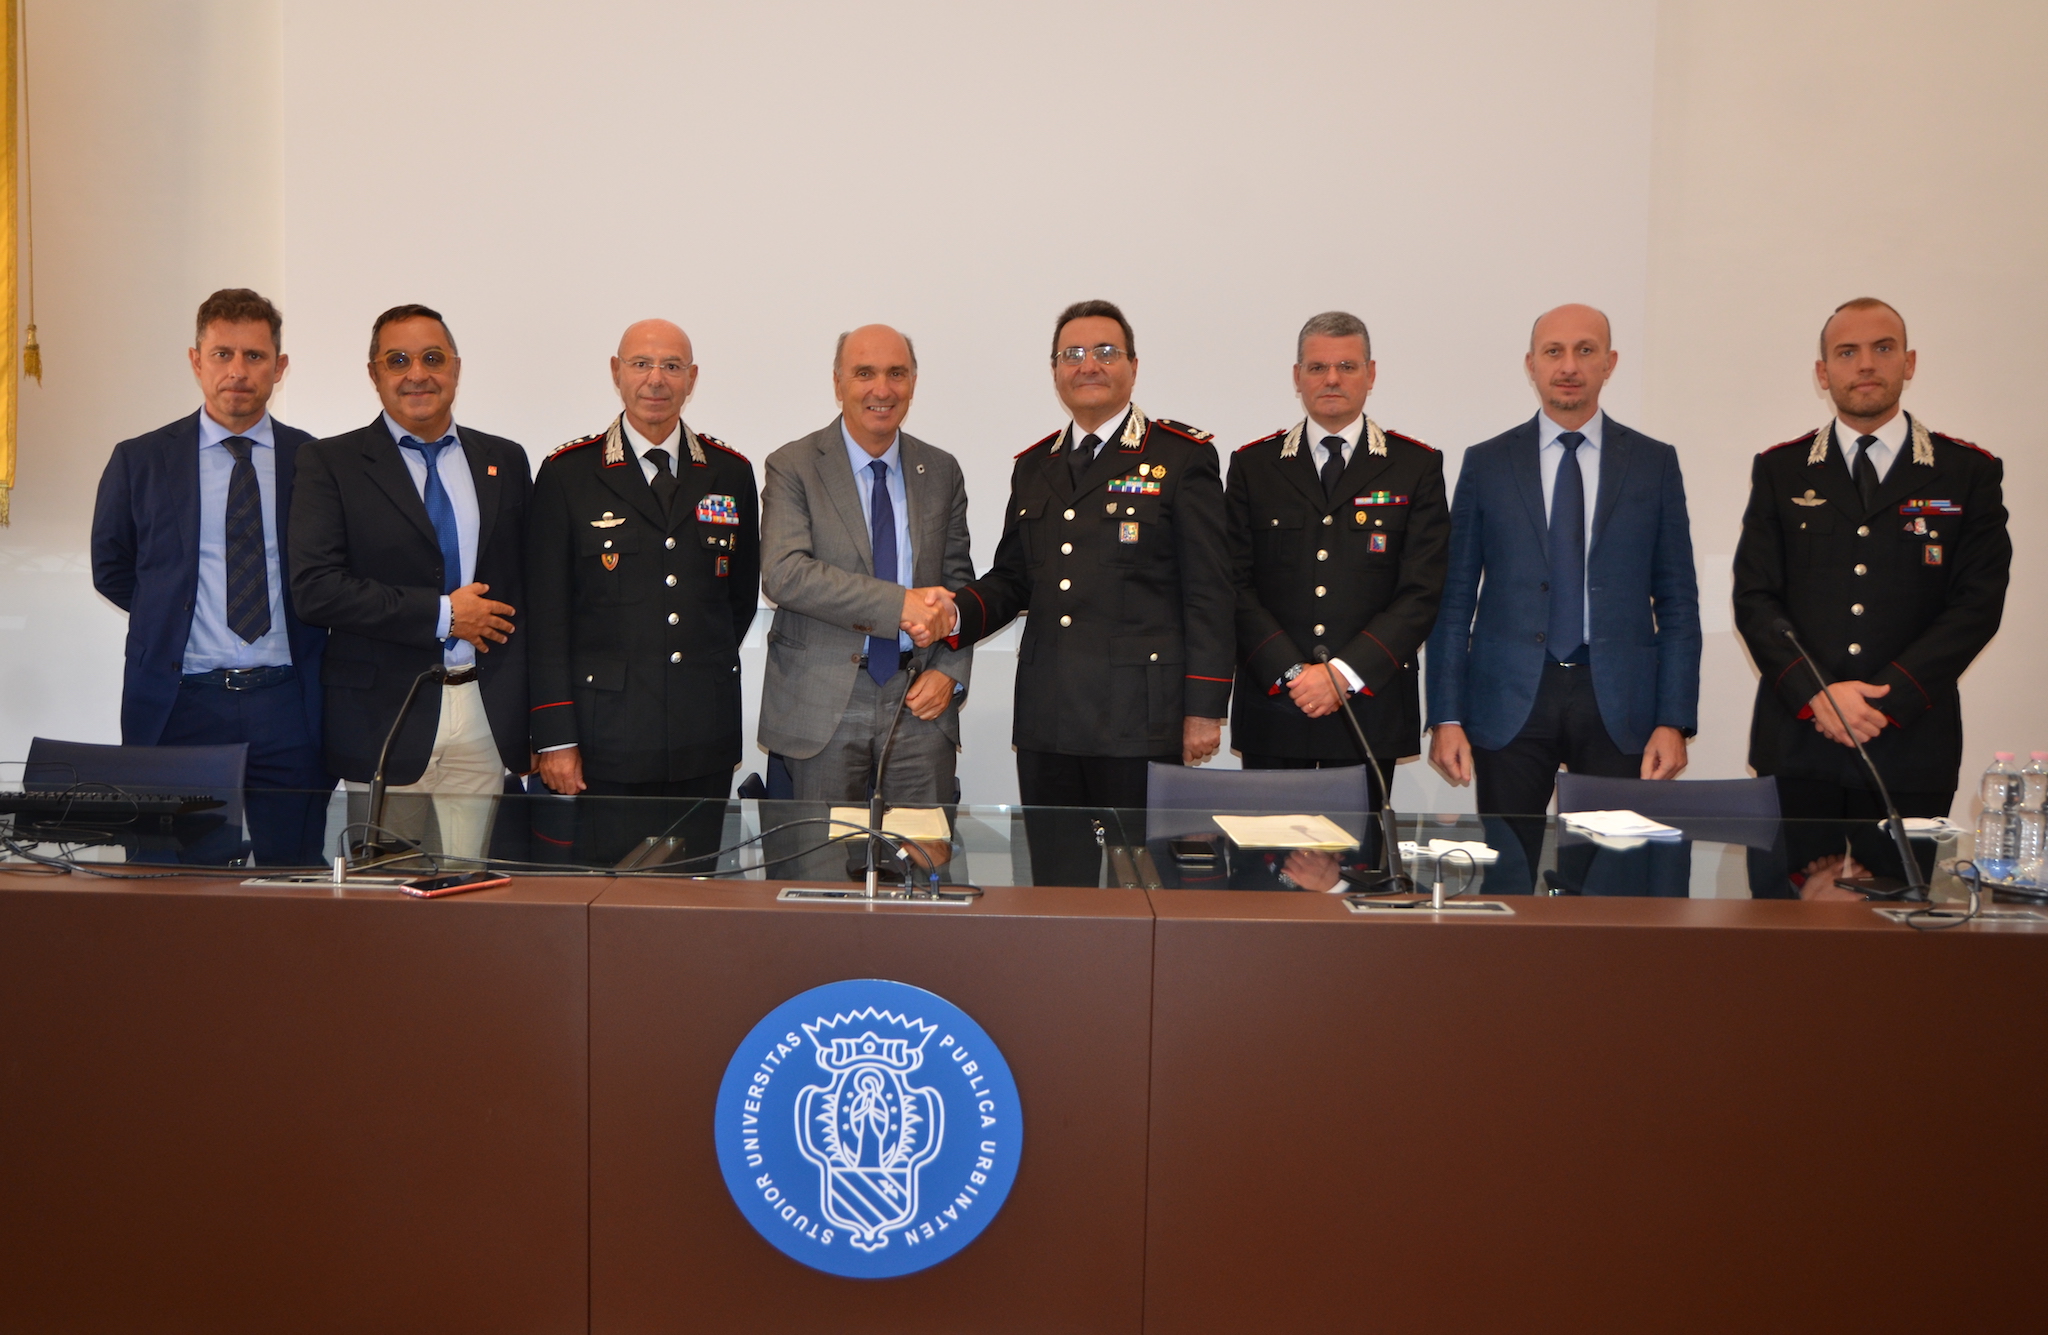 Accordo tra Università di Urbino e Carabinieri Marche